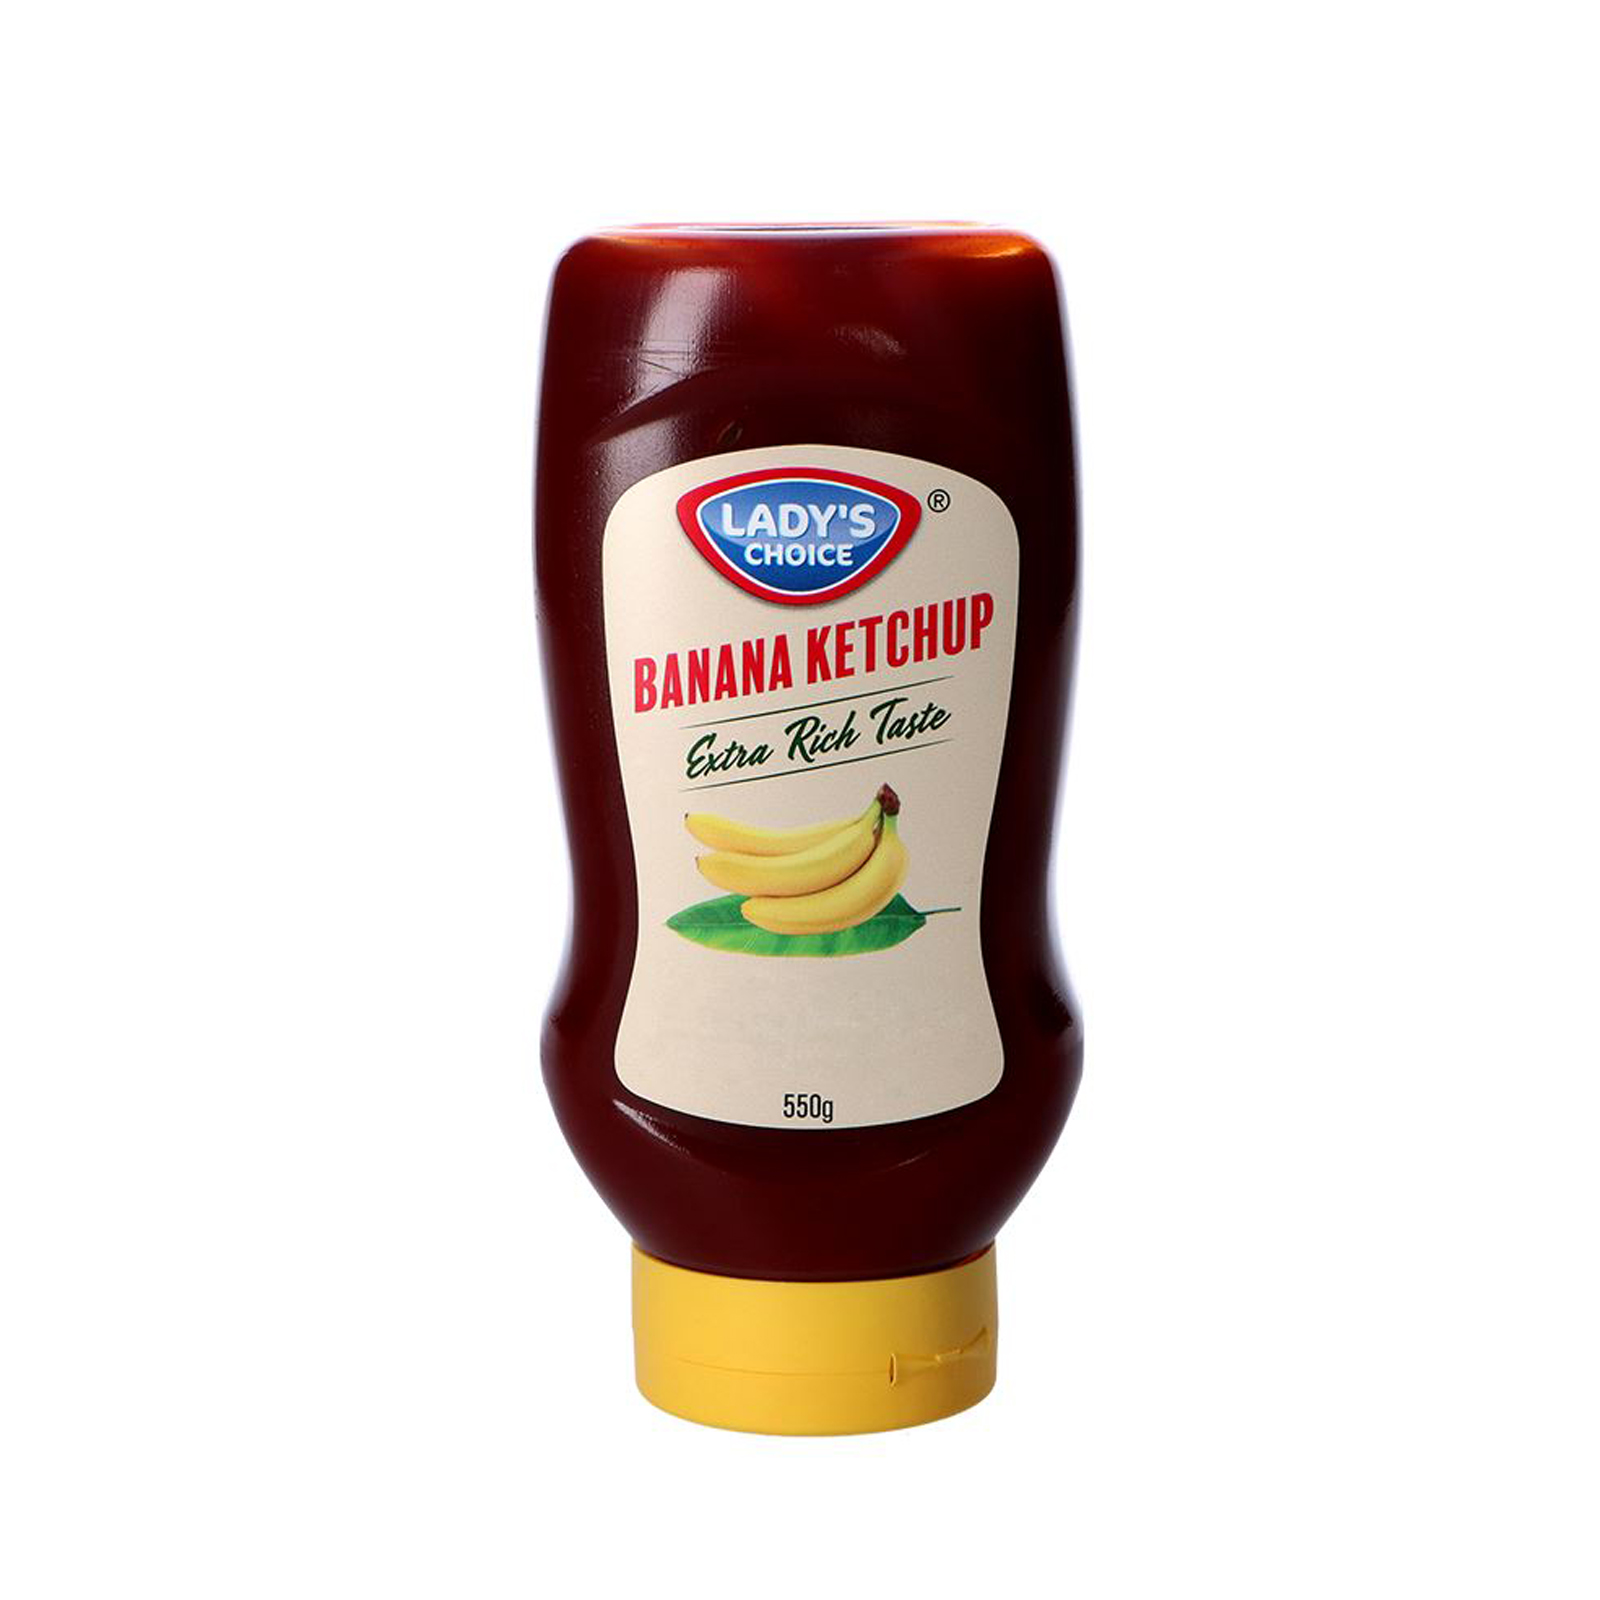 Banana Ketchup / Products / Cardinal